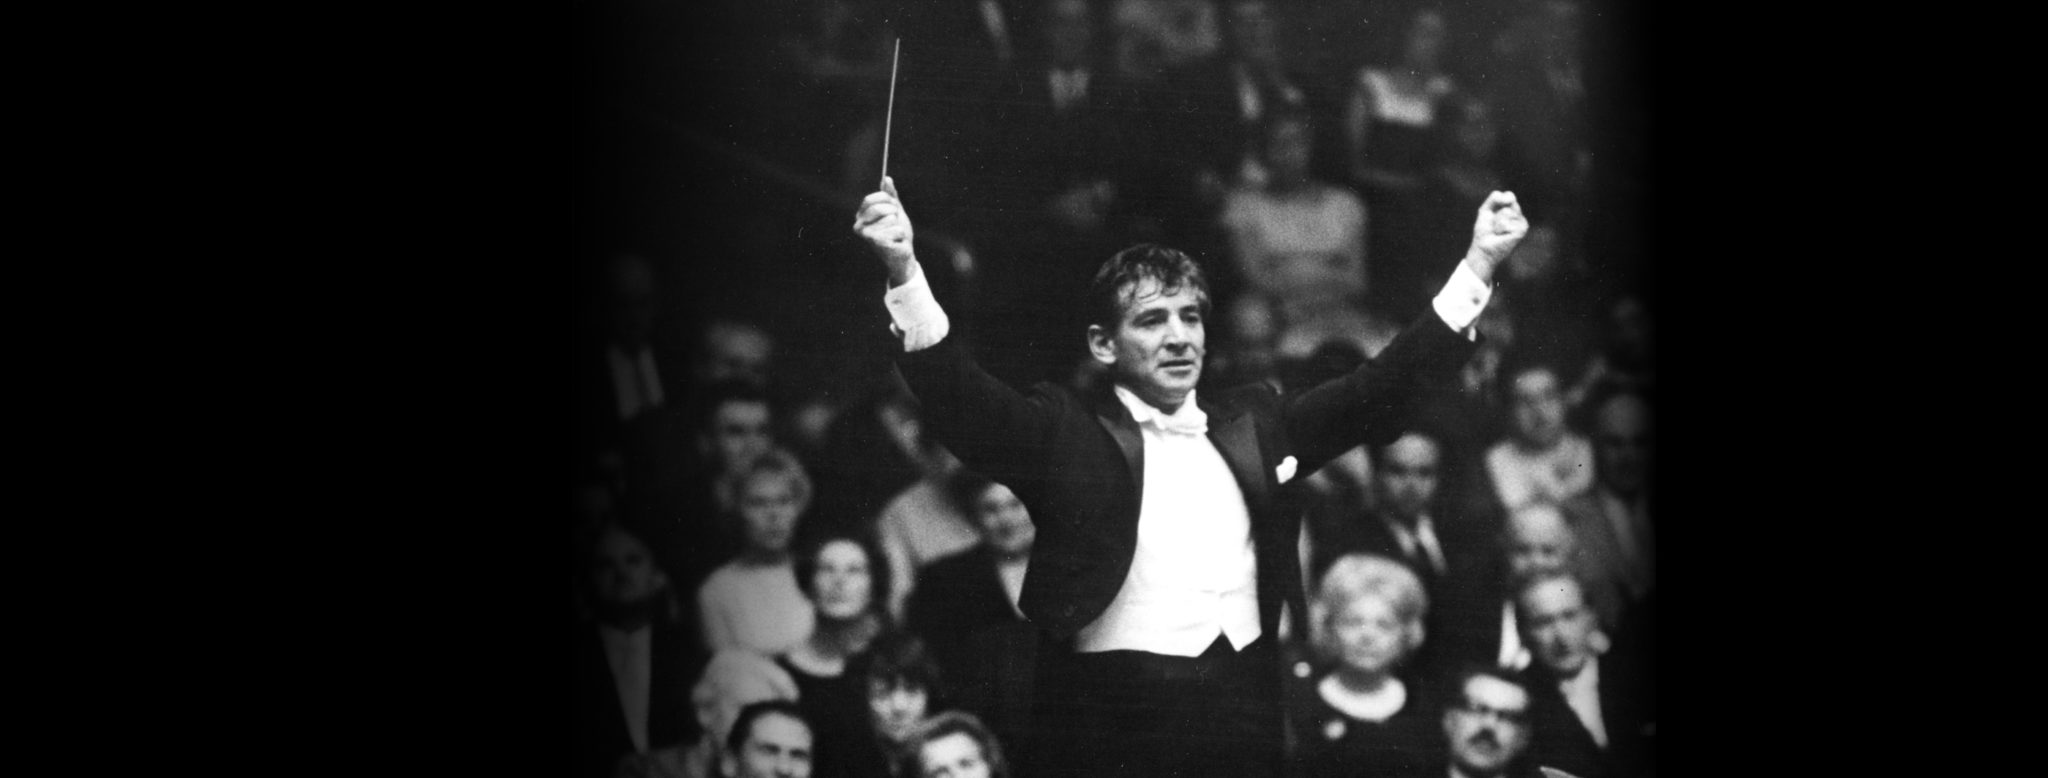 Leonard Bernstein conducts the New York Philharmonic (Credit: New York Philharmonic Archives)